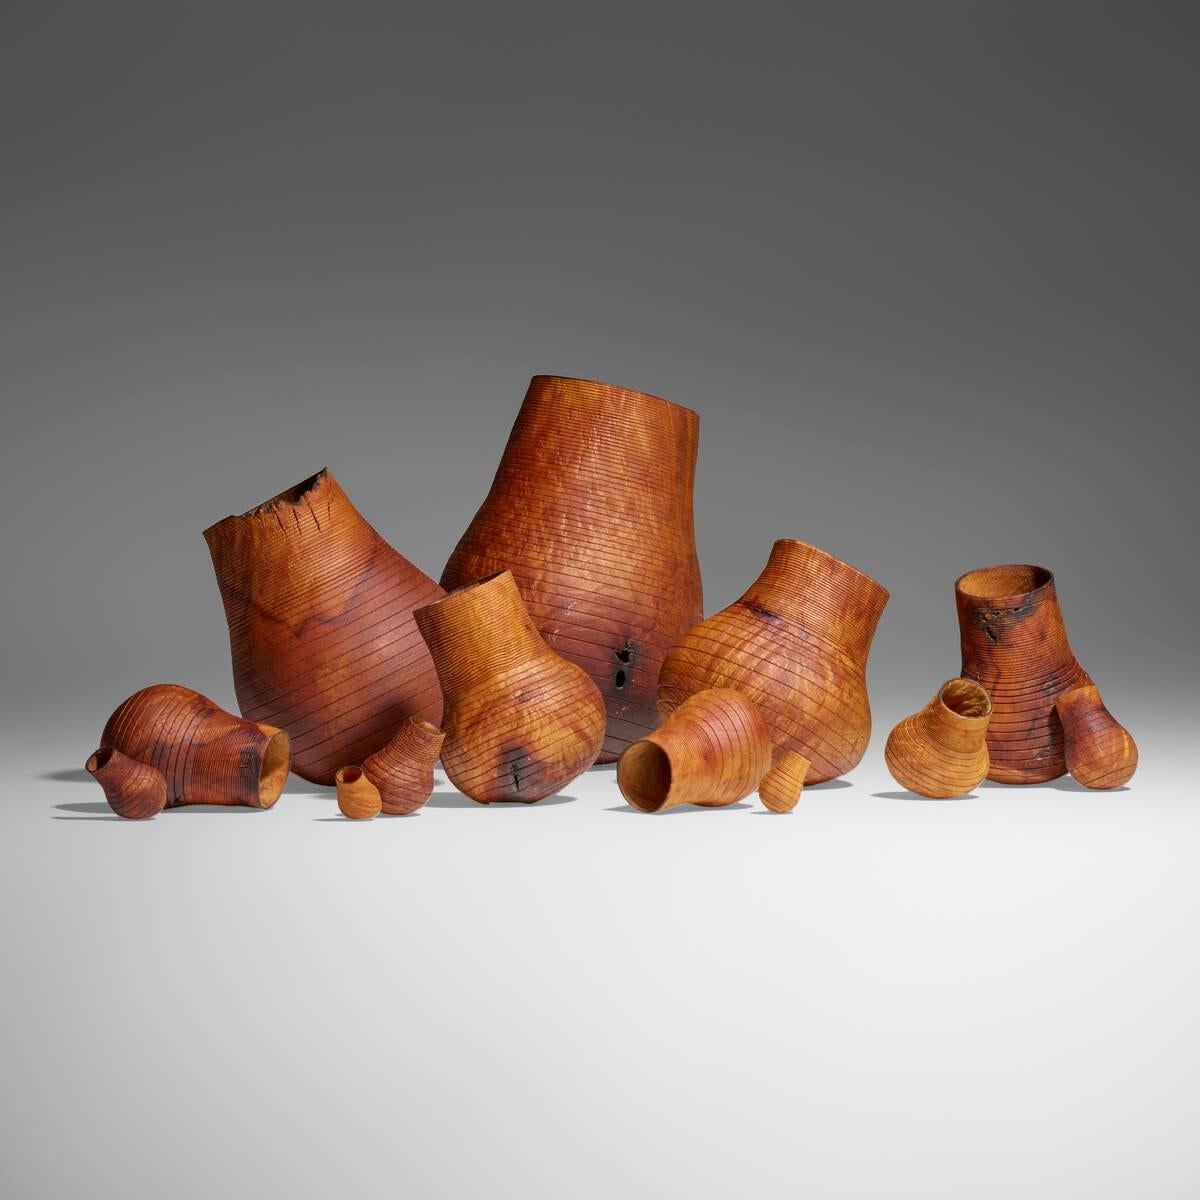 Collectional de treize oeuvres (de la série Gourd)  de vases-paniers organiques modernes en bois de bourgogne de l'artiste Christian Burchard. Le plus grand panier mesure 9